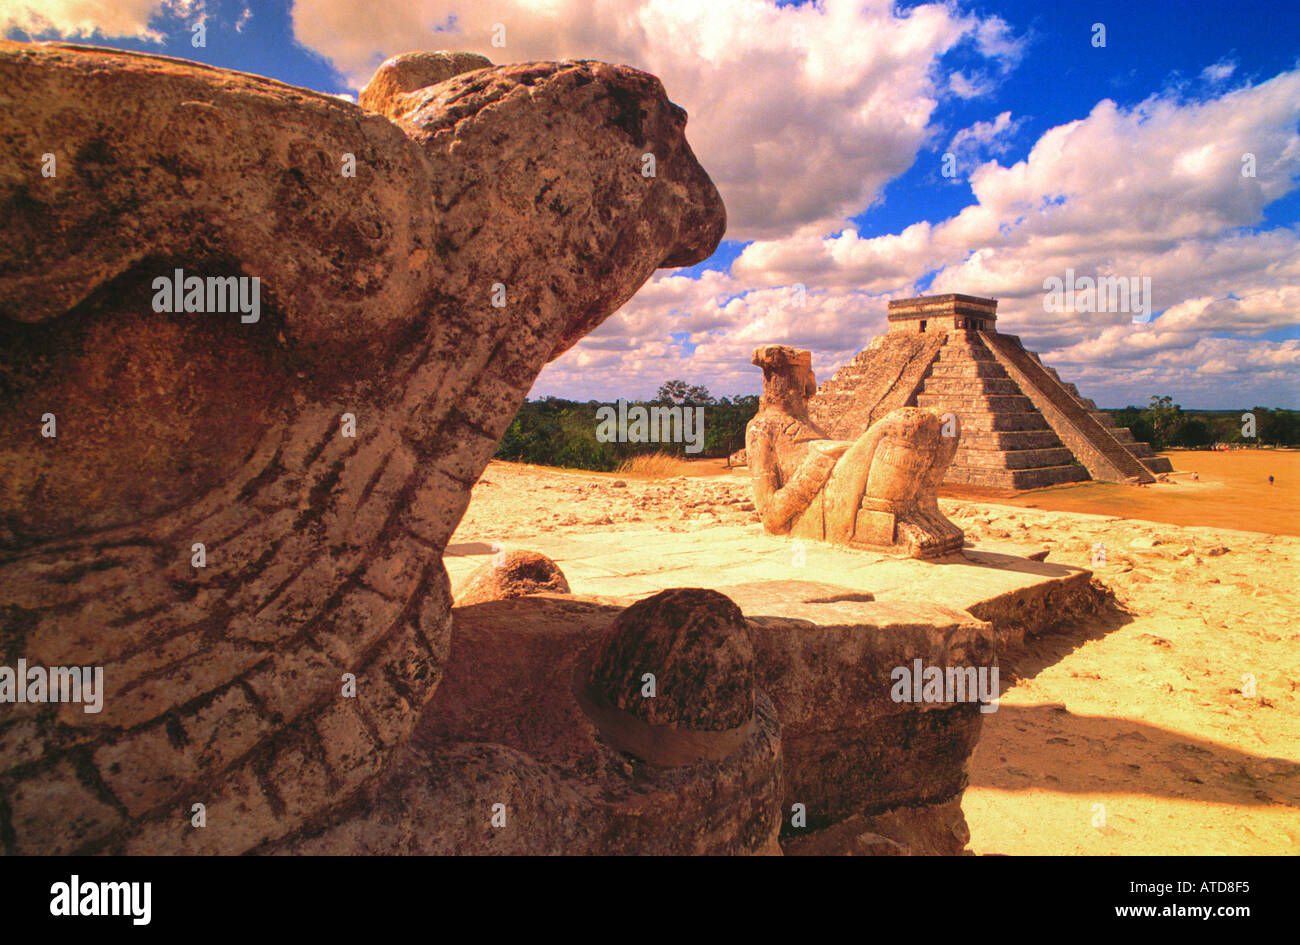 Des statues de dieux et les reptiles sont assis sur les ruines de Chichen Itza en vue d'El Castillo ou la pyramide dans la distance Banque D'Images